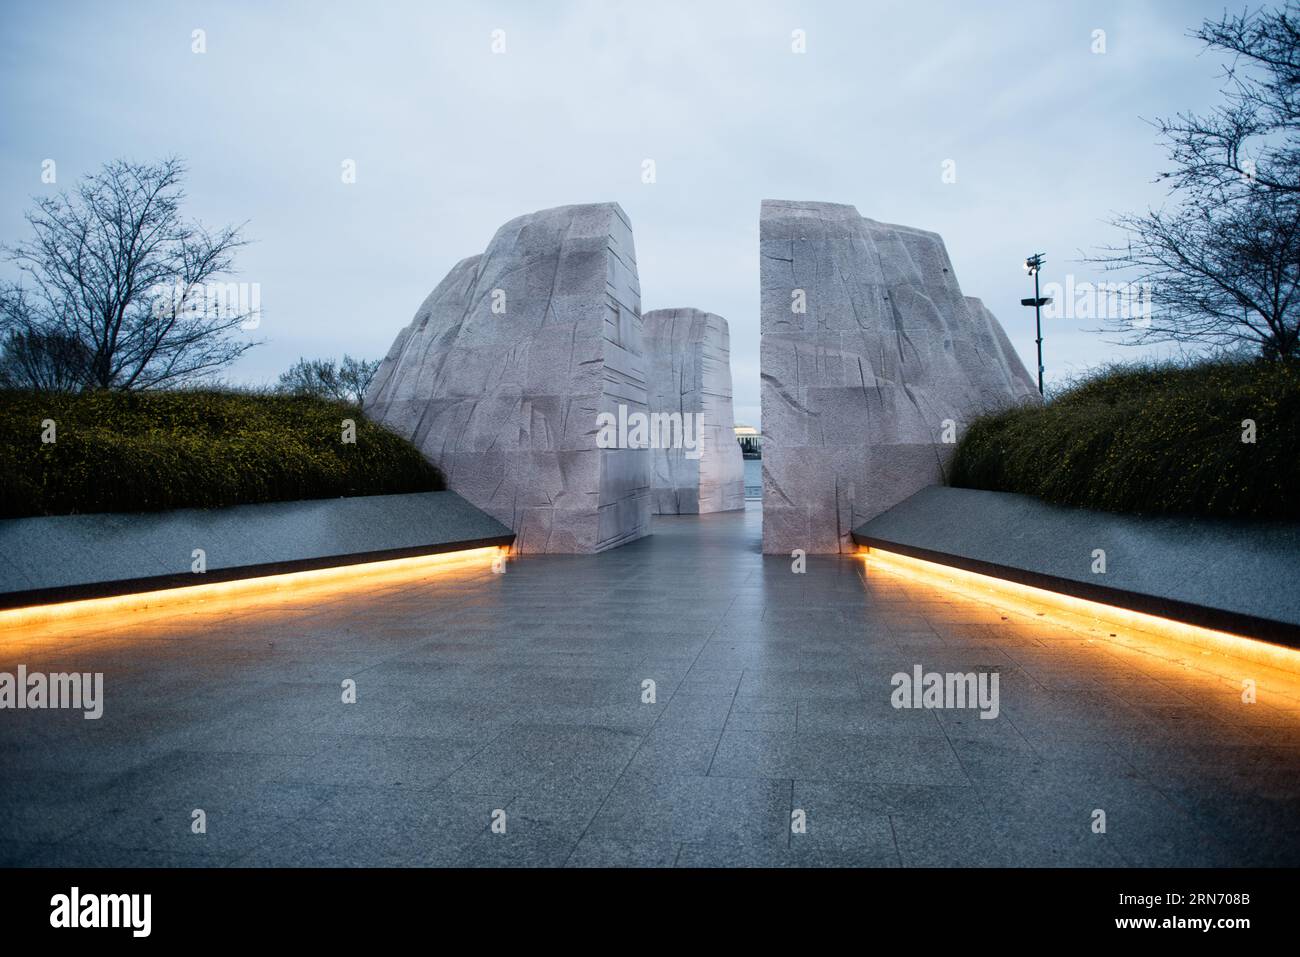 WASHINGTON DC, Vereinigte Staaten – der Martin Luther King Jr. Das Memorial erinnert an das beständige Erbe des Bürgerrechtlers. Das Denkmal, das sich am Tidal Basin der National Mall befindet, erinnert an Dr. Kings Beiträge zur amerikanischen Bürgerrechtsbewegung und an sein Streben nach Gerechtigkeit mit gewaltfreien Mitteln. Stockfoto